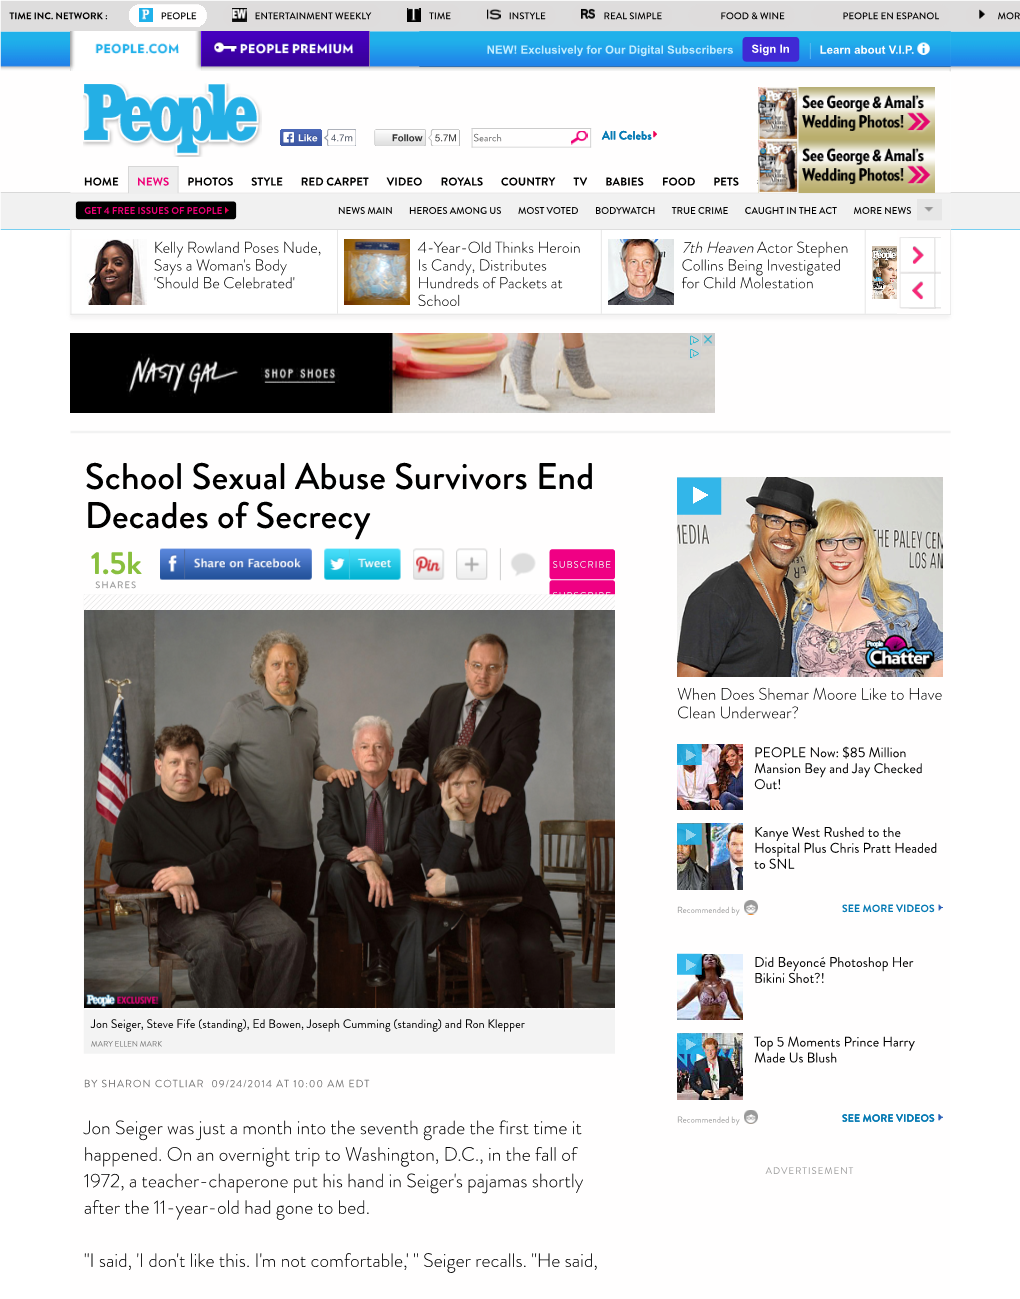 Sharon Cotliar, School Sexual Abuse Survivors End Decades of Secrecy